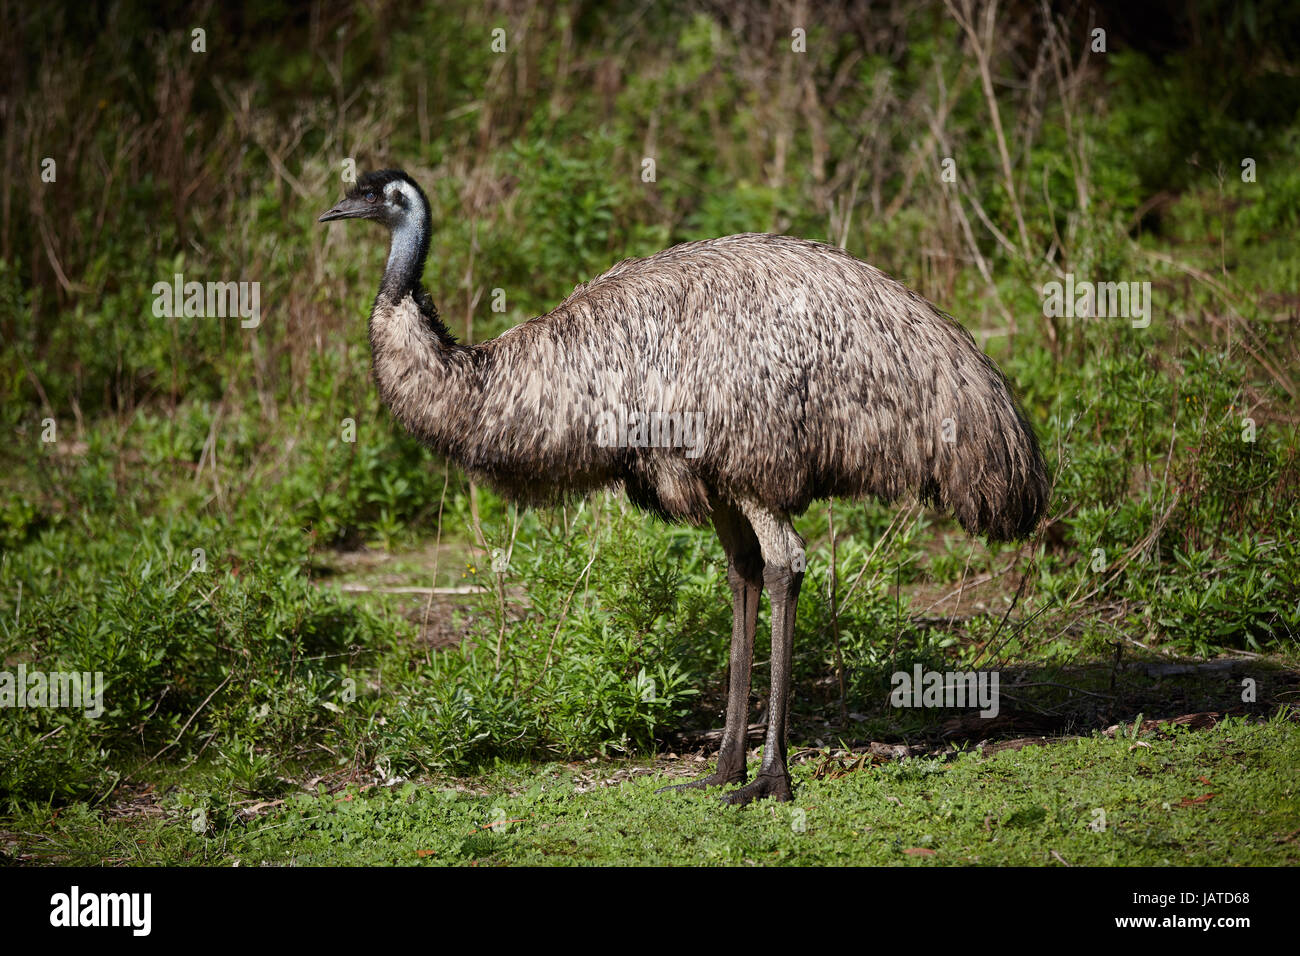 La Emu australiano, es una gran ave no voladora a menudo visto pastando junto a la carretera. Foto de stock